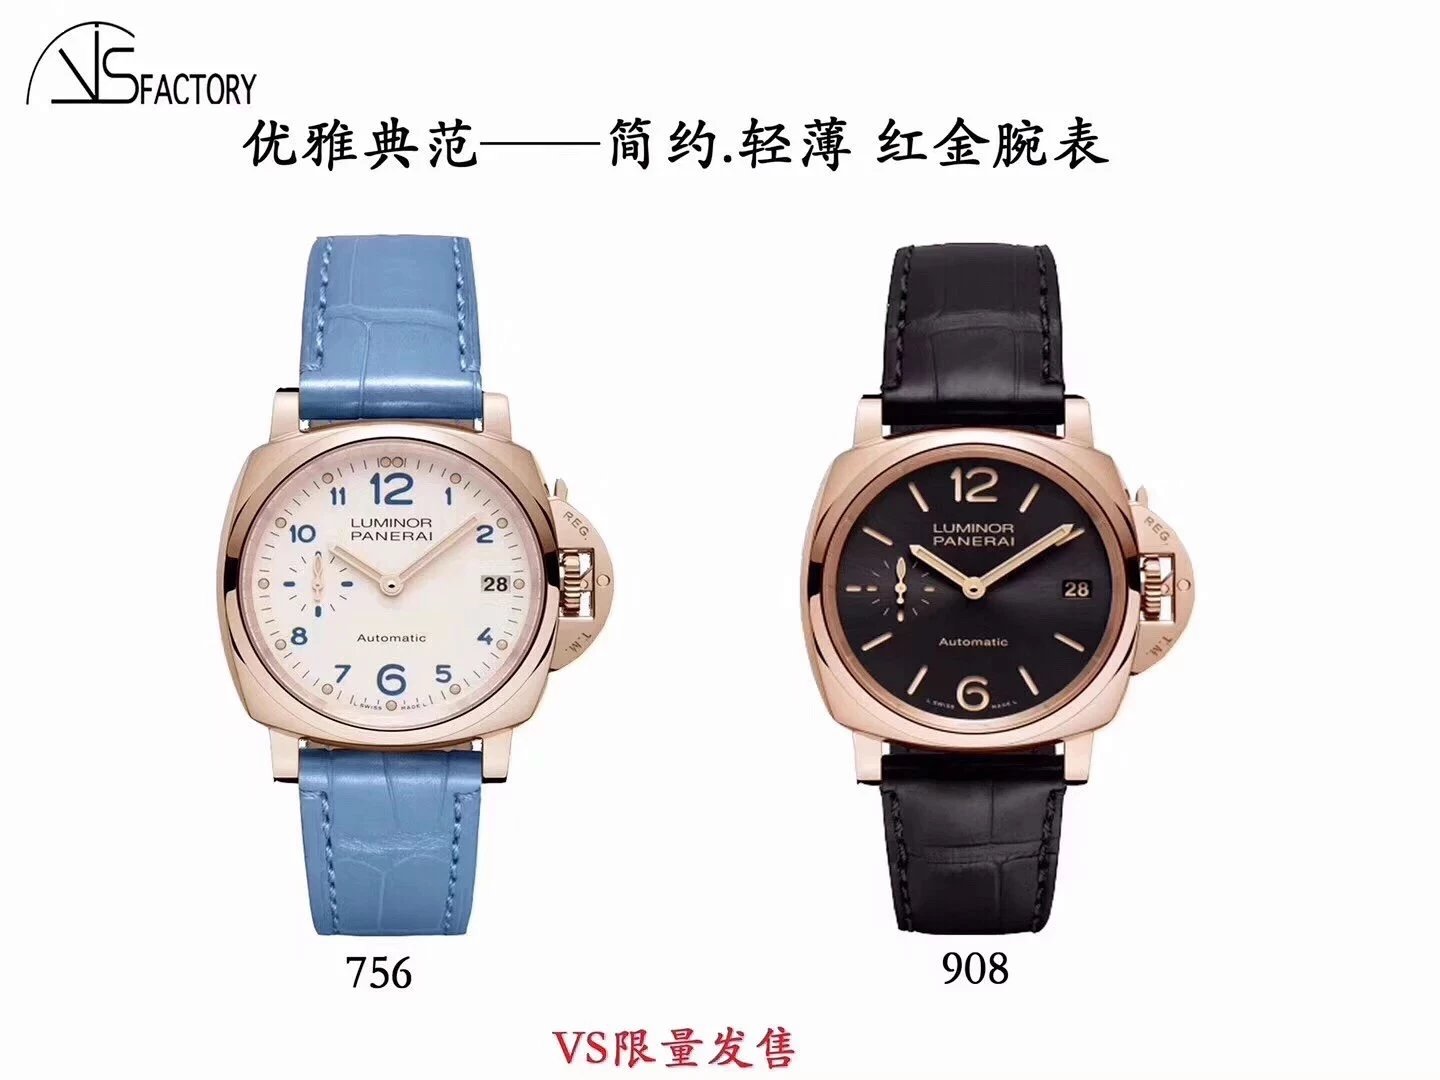 VS厂沛纳海pam908优雅典范红金腕表！一款适合亚洲手腕的红金腕表。男士腕表，皮表带，自动机械机芯，透底